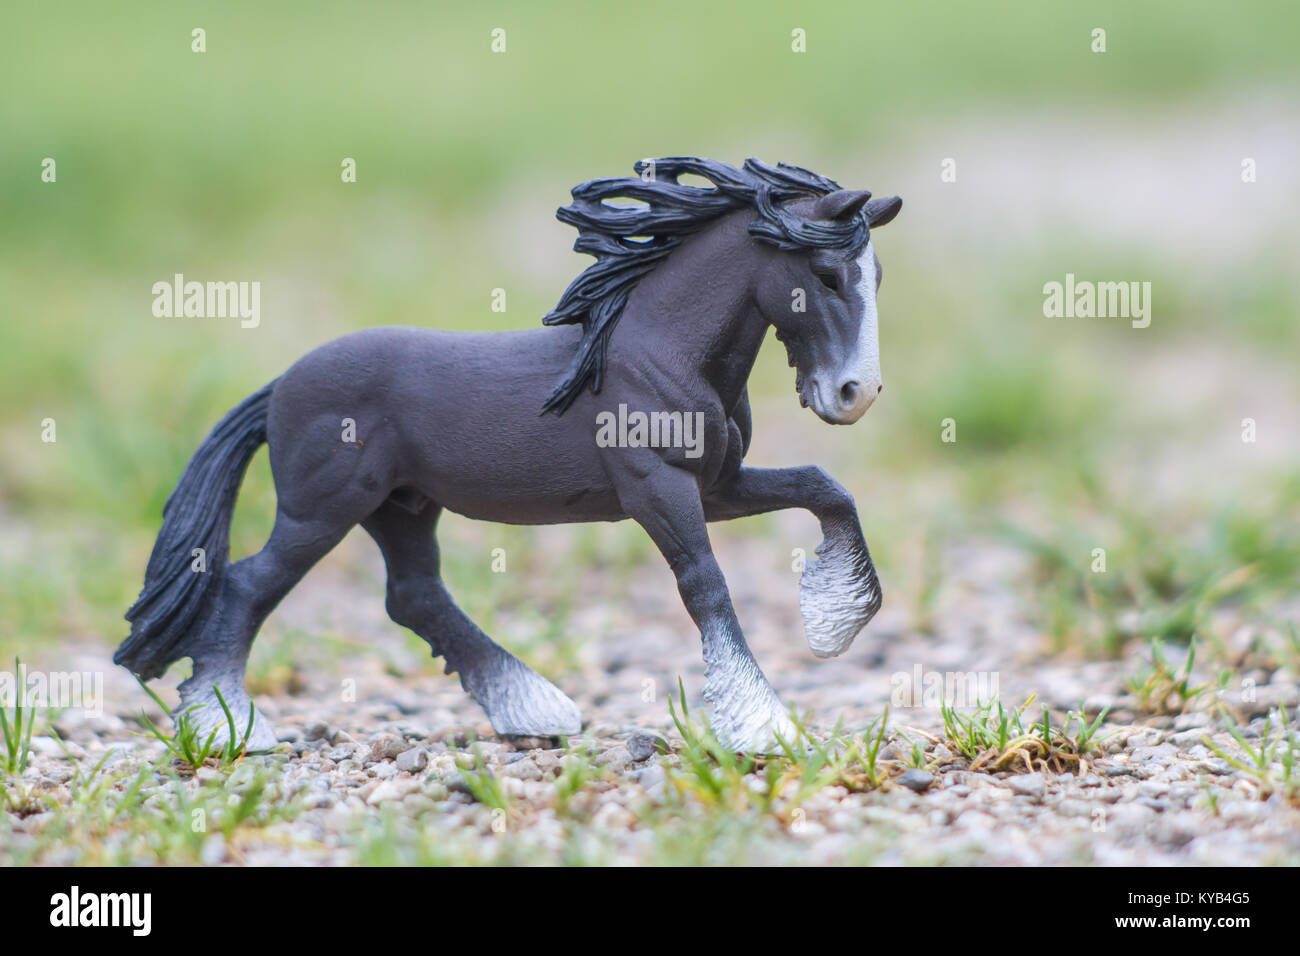 Les jouets pour enfants, modèle chevaux Schleich Photo Stock - Alamy